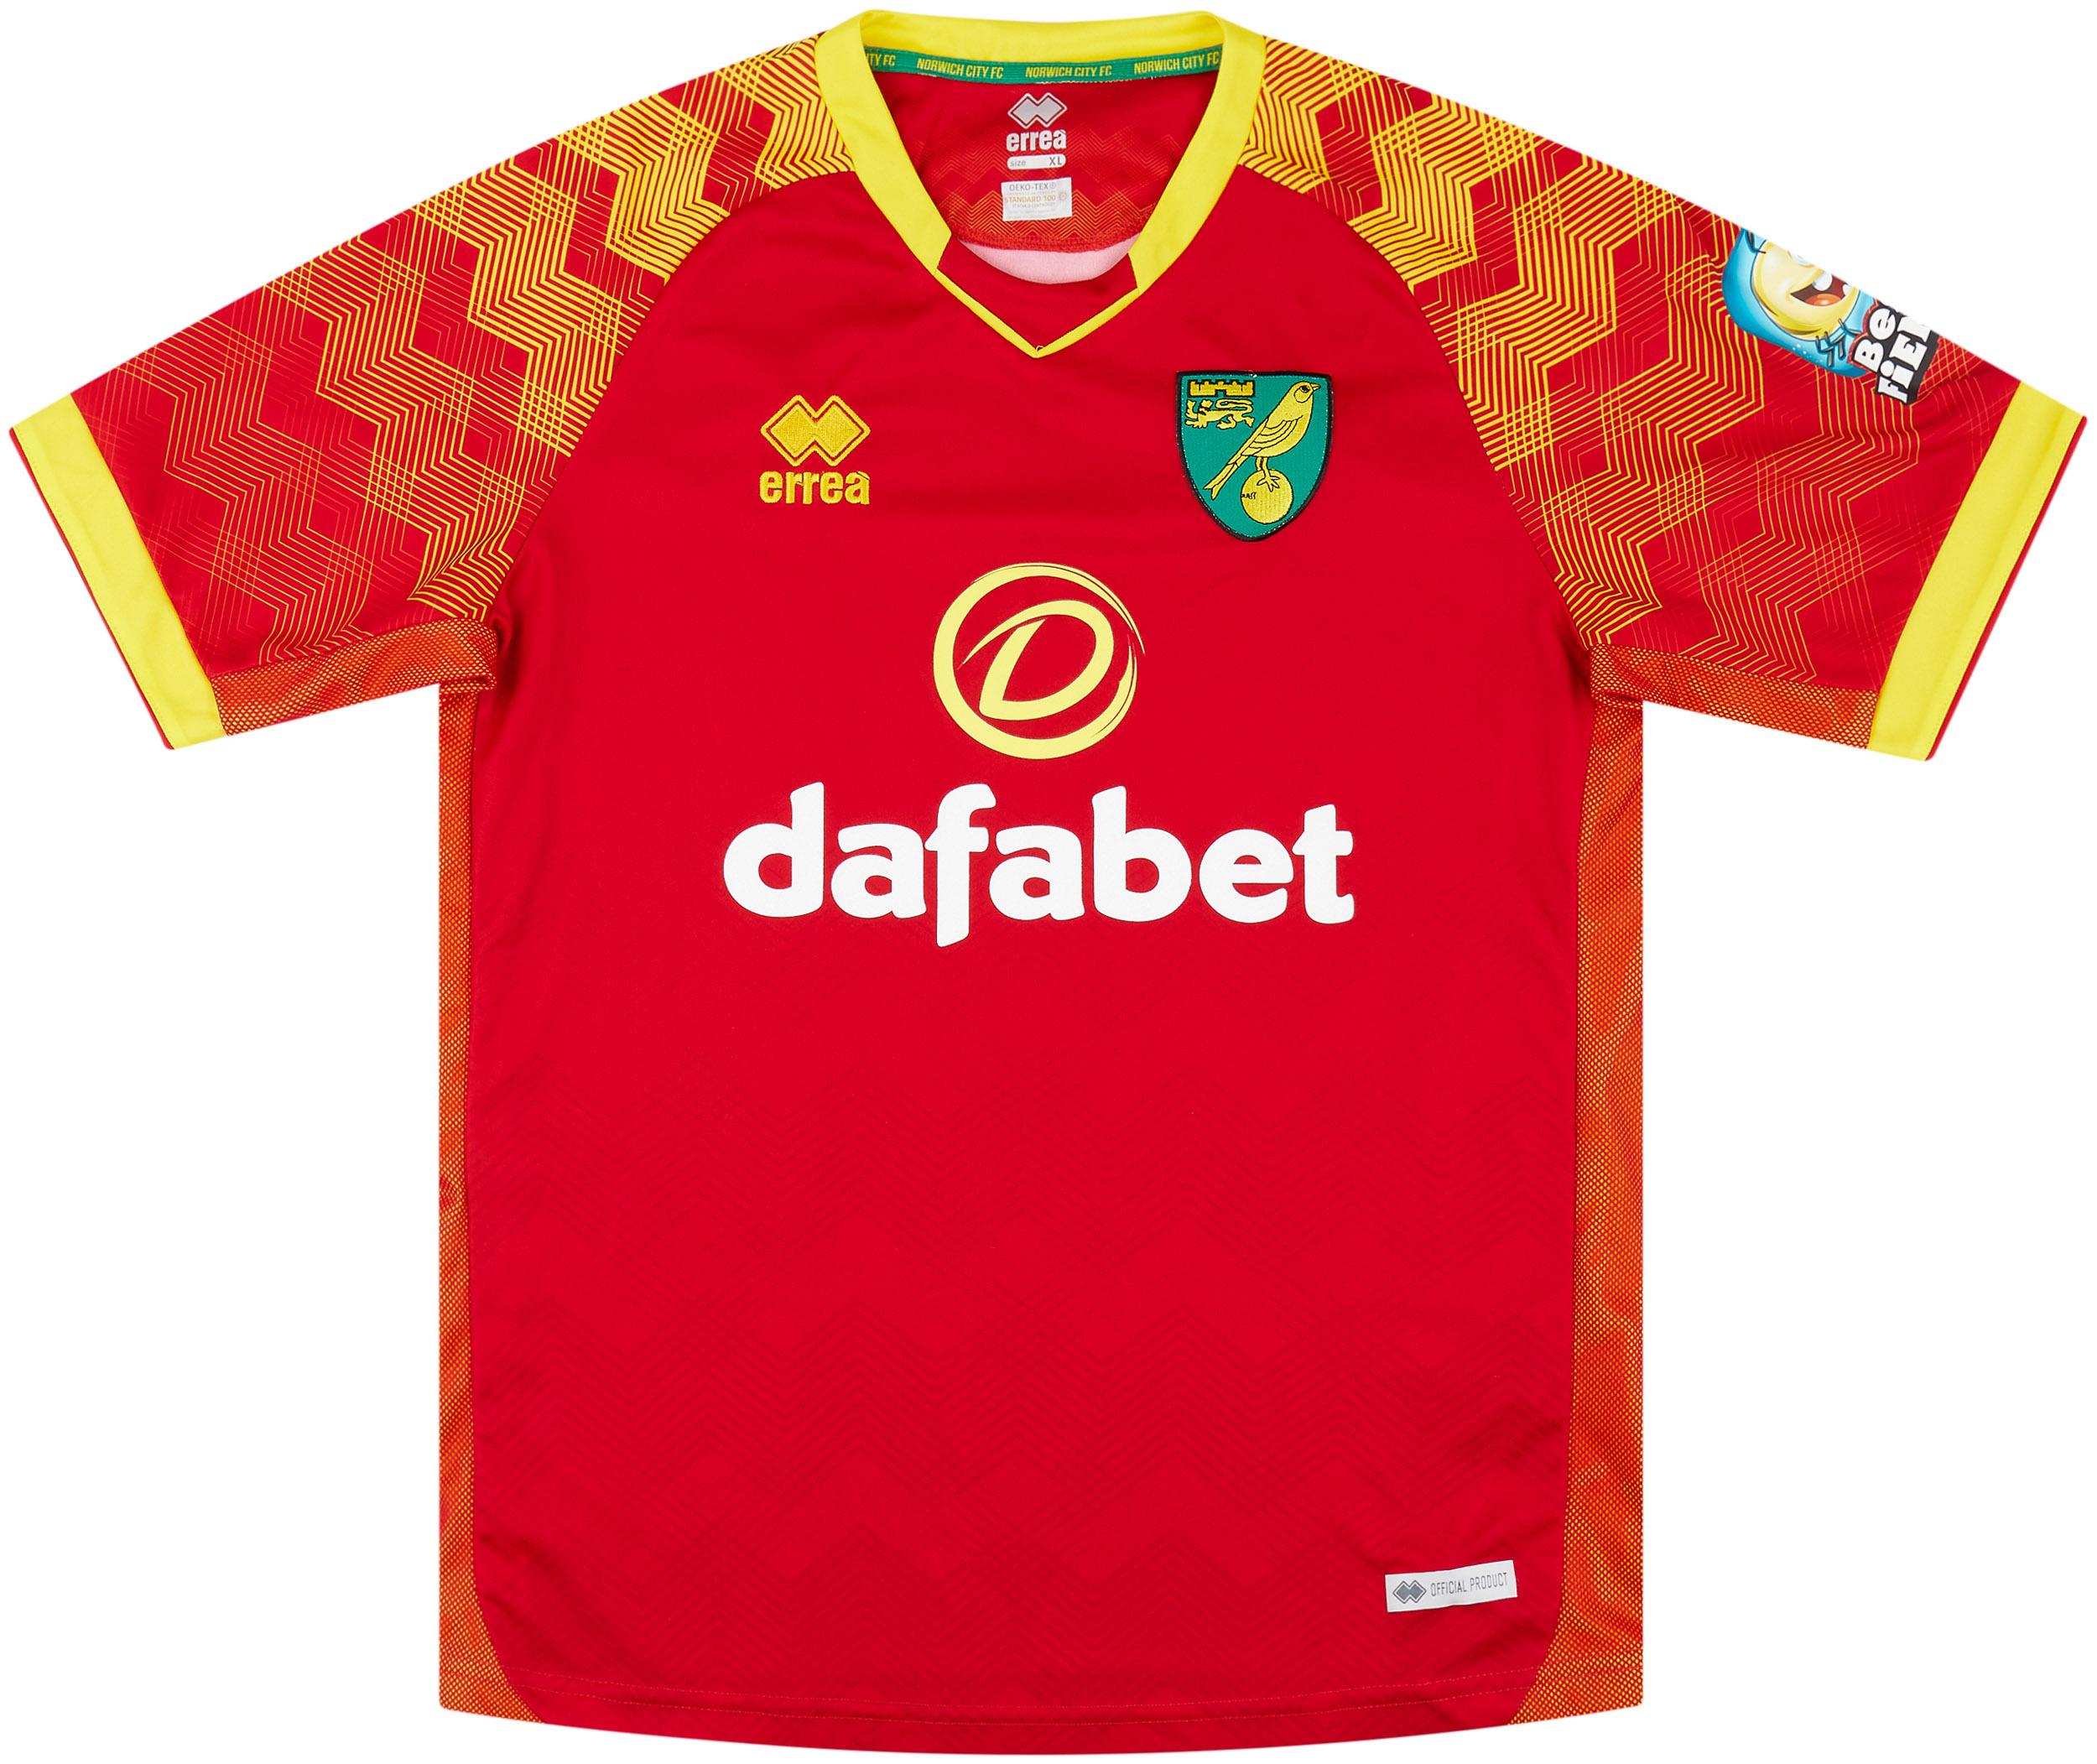 Norwich City  Borta tröja (Original)